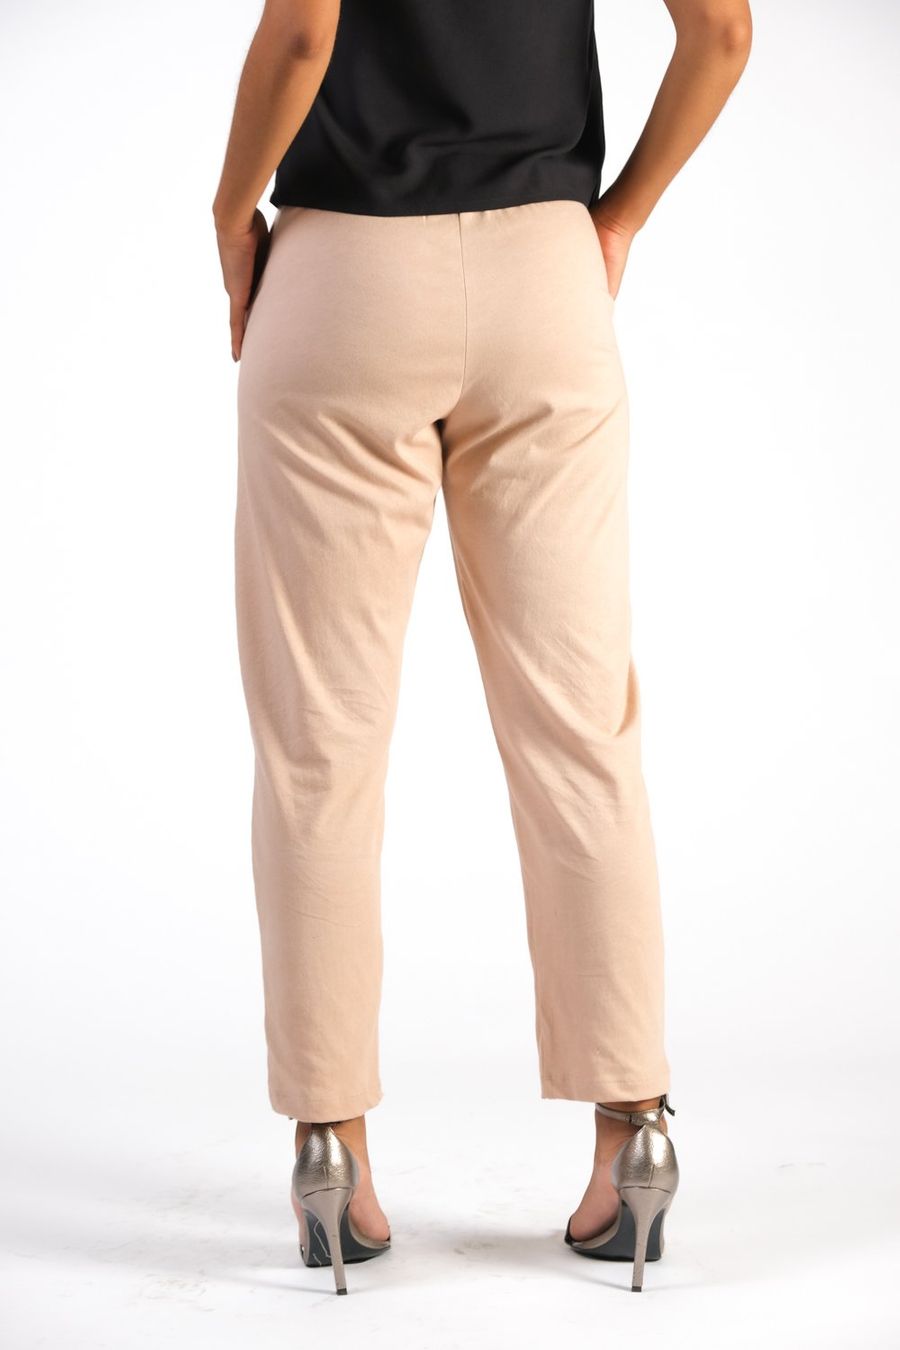 Sothy Jersey Trousers - wearwell